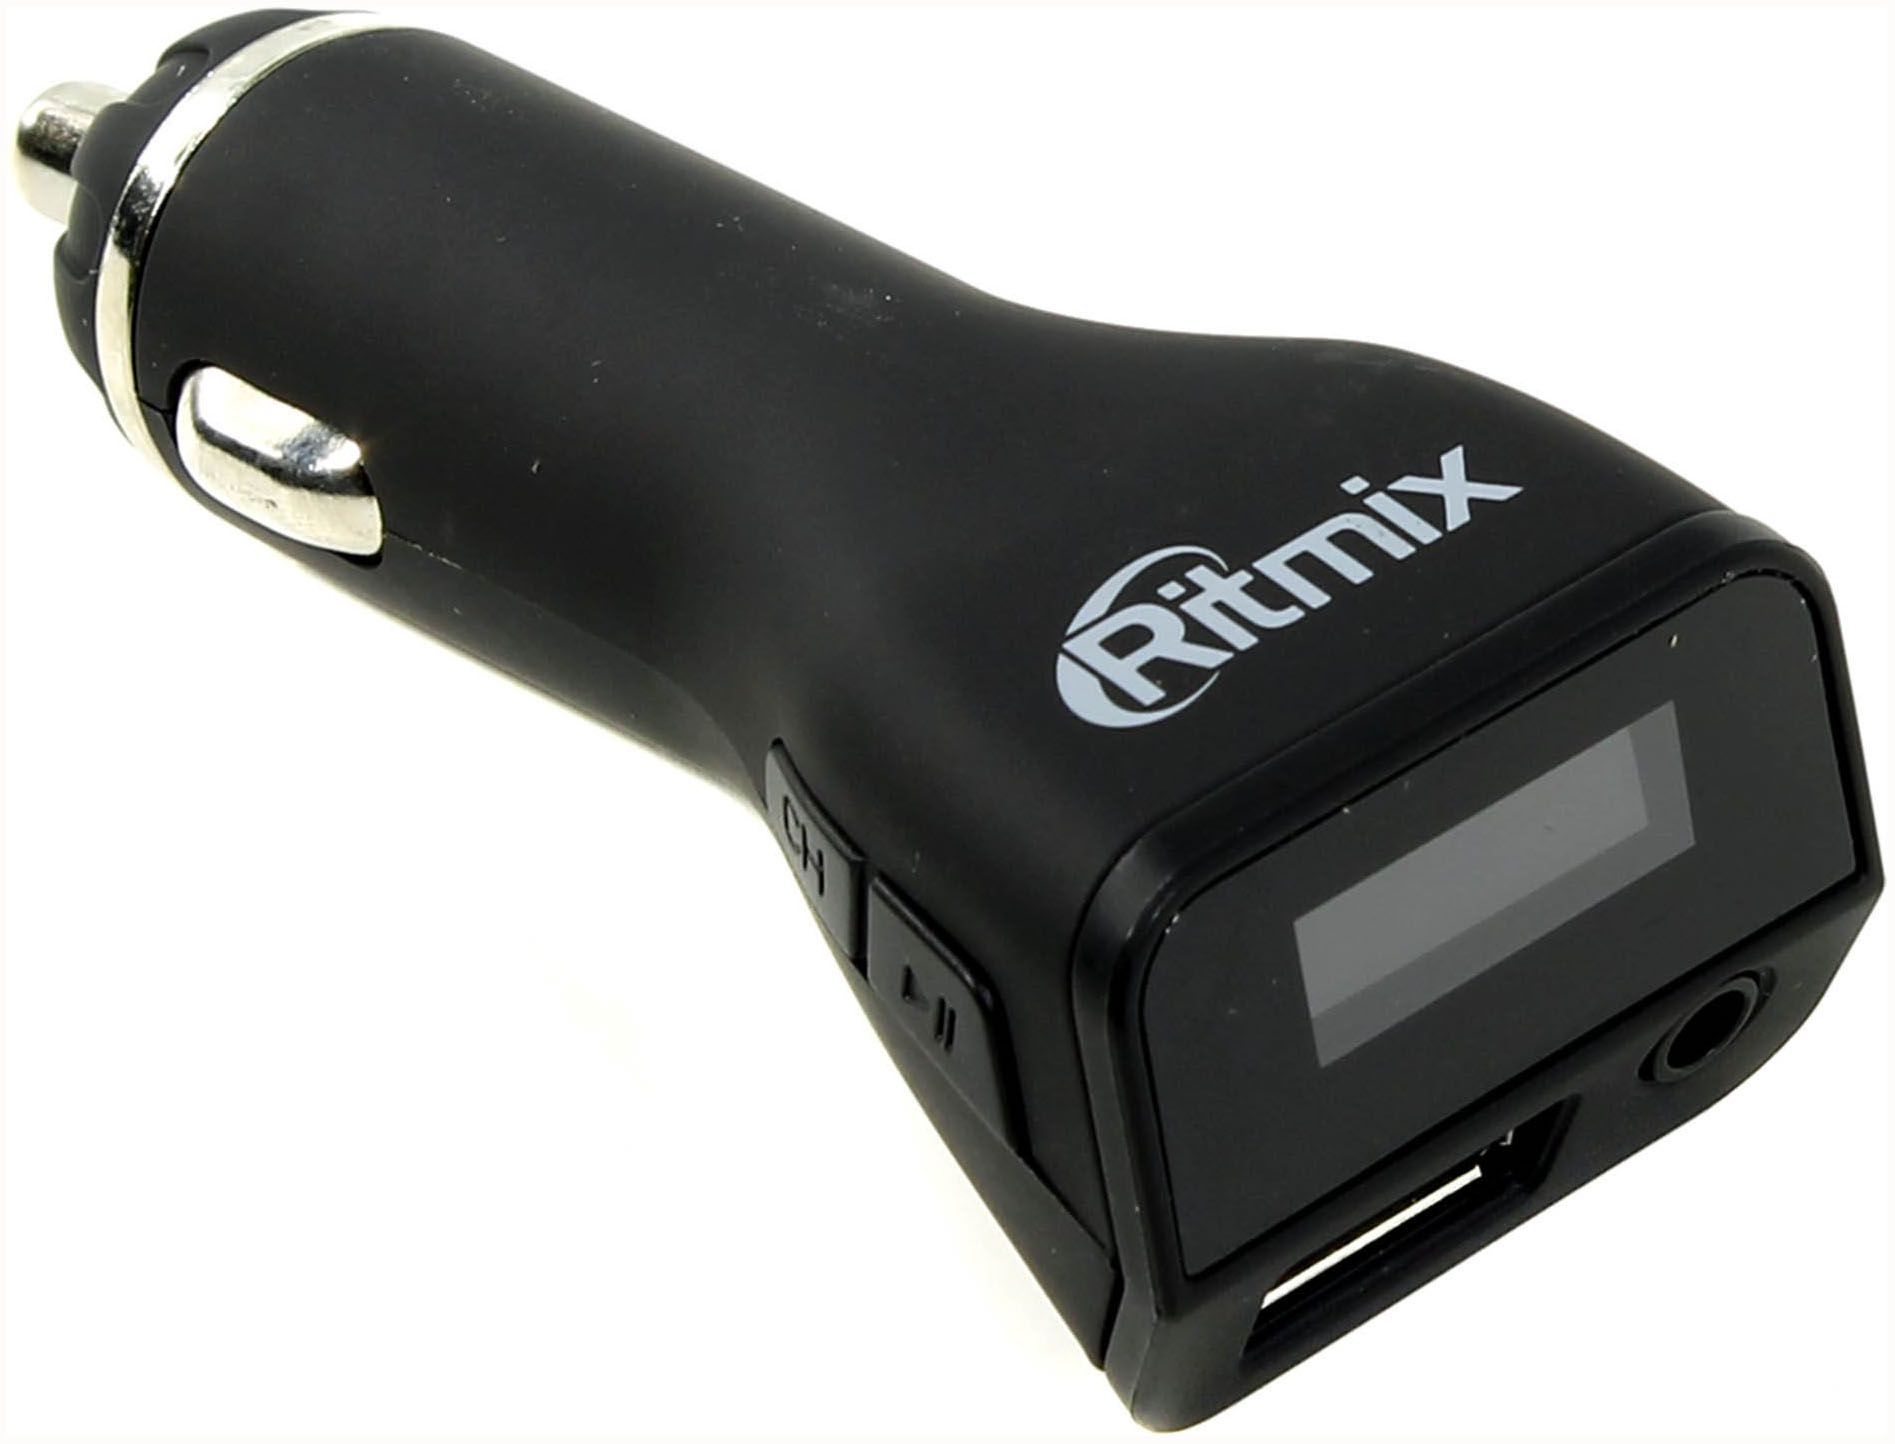 FM модулятор Ritmix FMT-A740